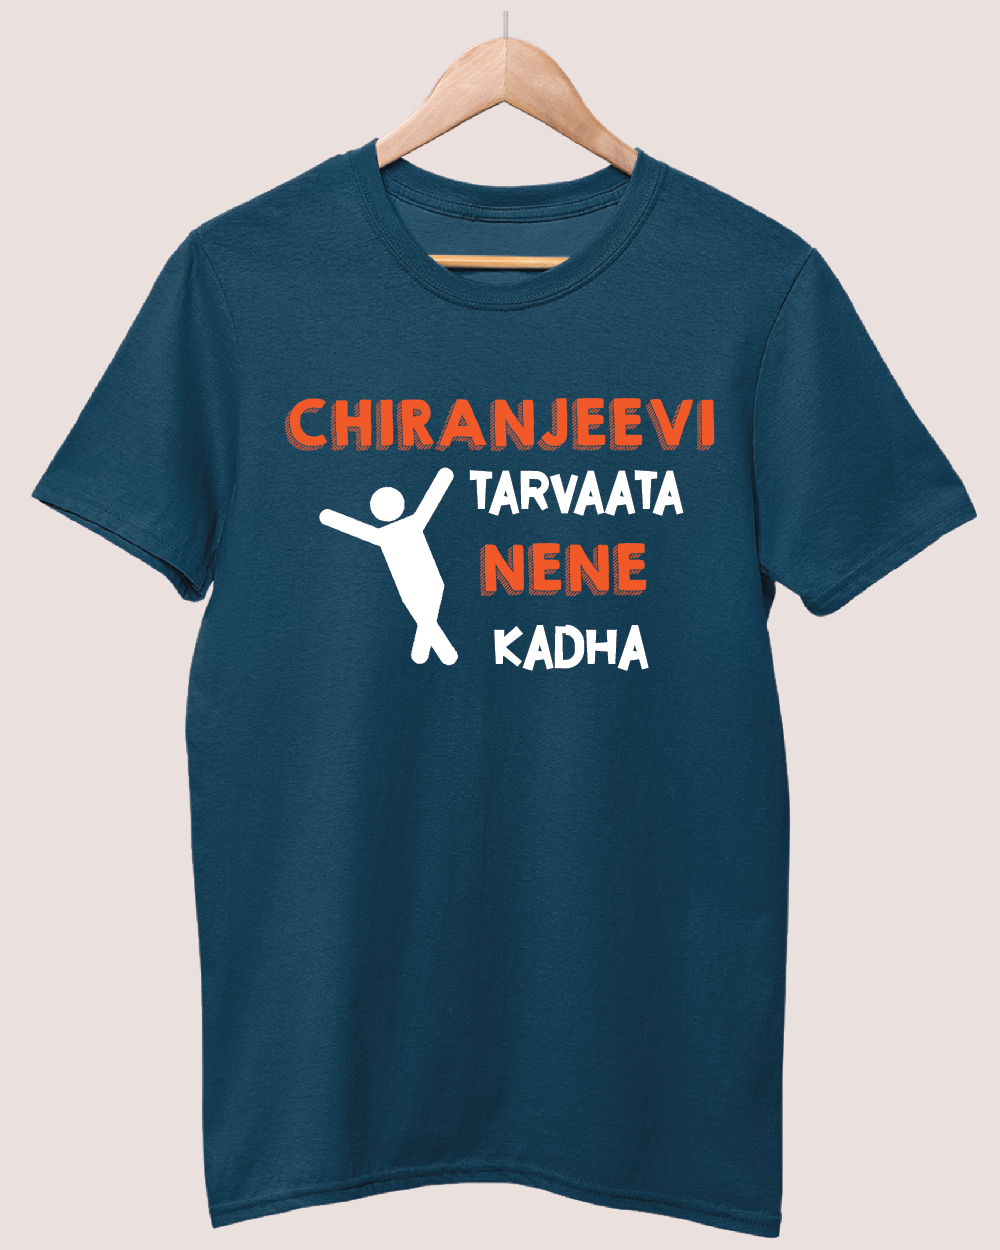 Chiranjeevi Tarvatha Nene Kada 2 T-shirt